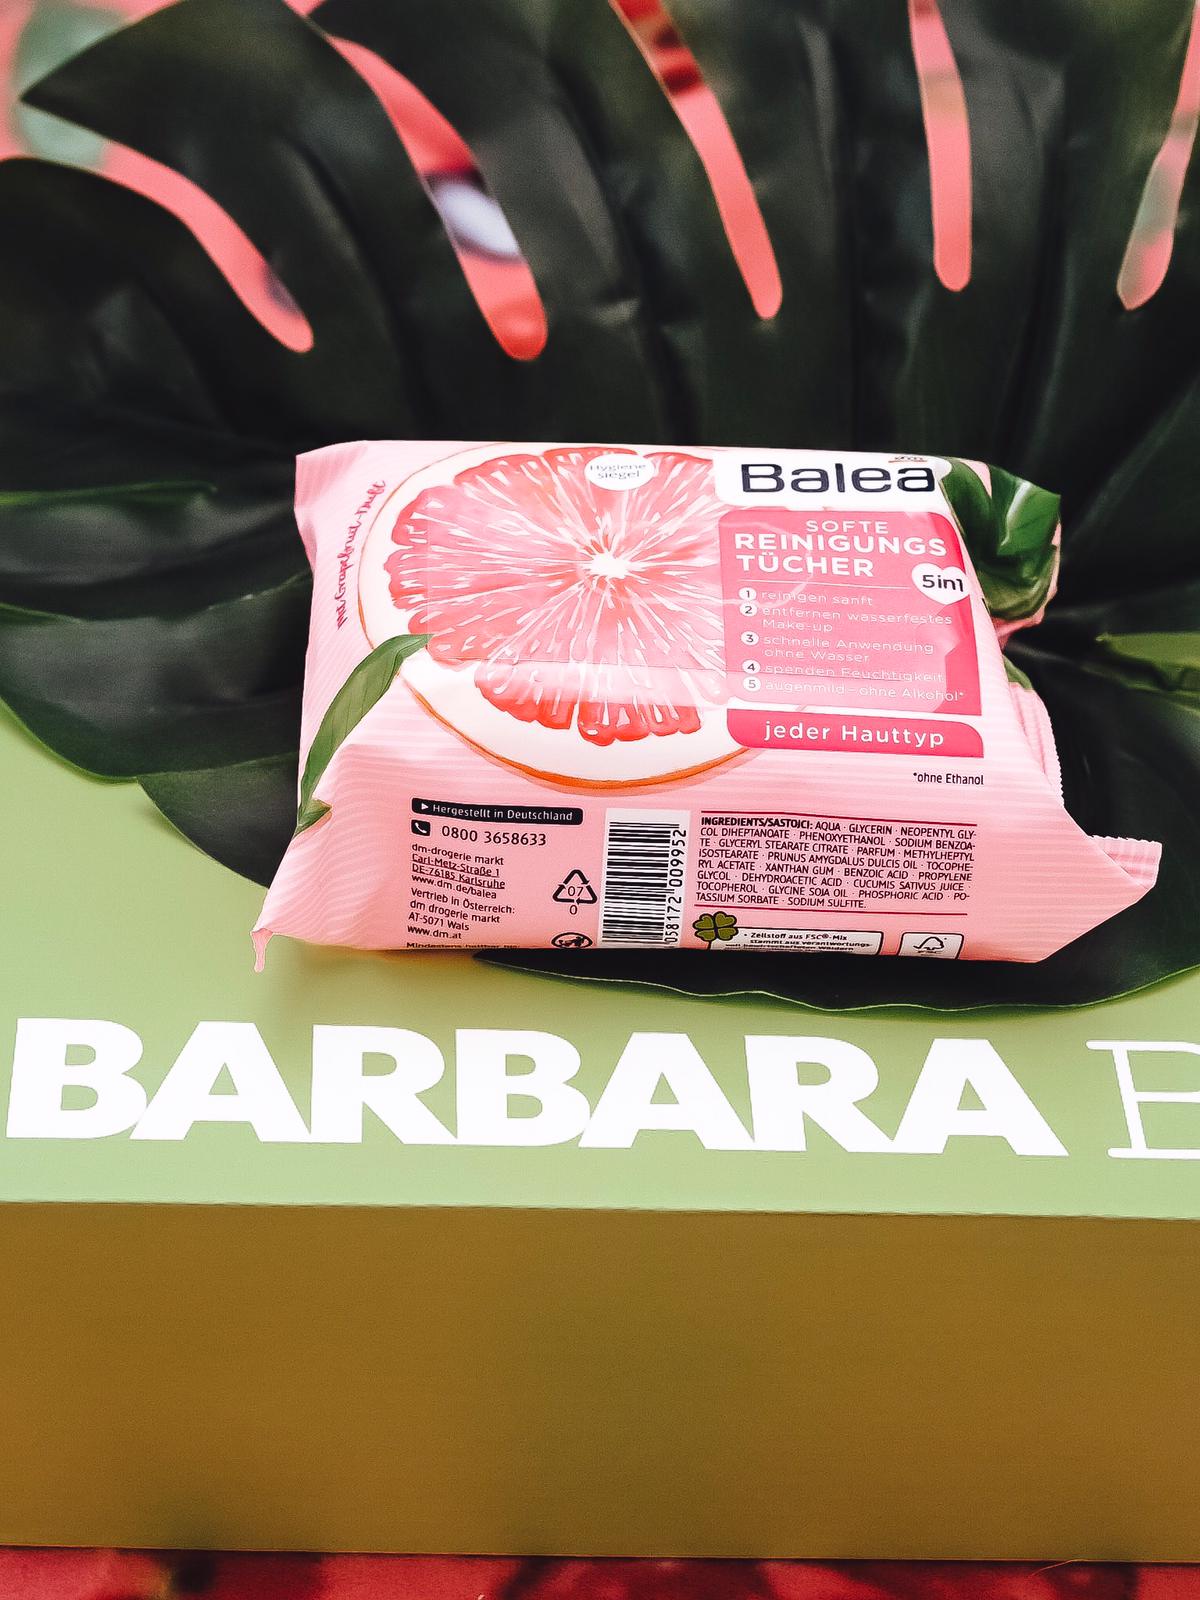 Die aktuelle Barbara Box Einen Cocktail bitte bietet eine vielfältige Produktauswahl von bspw. einem Eiscreme-Mix bis hin zu einem stylischen Lippenstift.